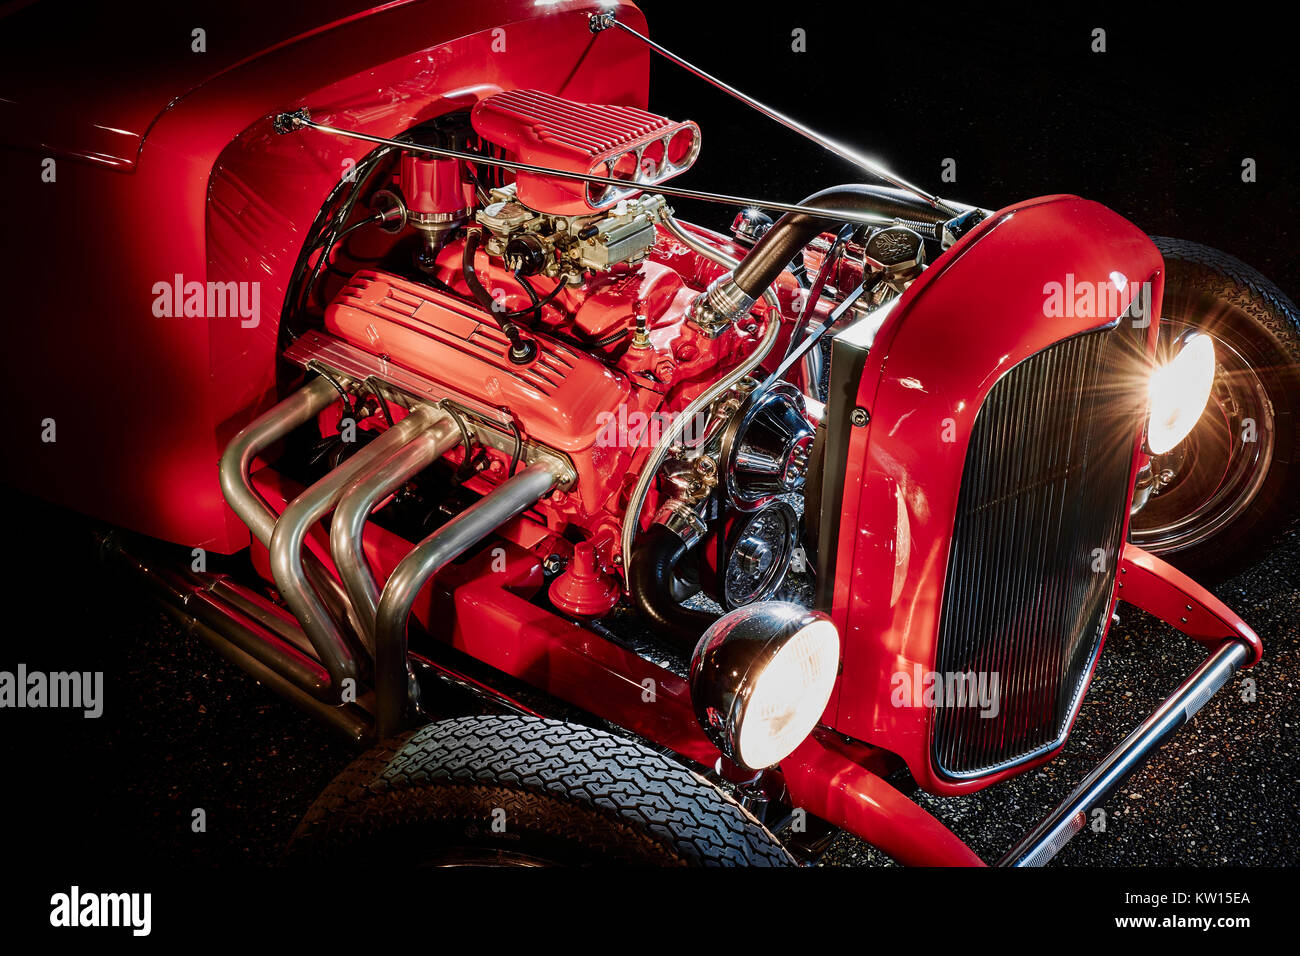 Isolato su nero, rosso Ford hot rod motore che mostra il dettaglio delle intestazioni, tubi e quattro canna carburatore, girato di notte utilizzando la luce della pittura. Foto Stock